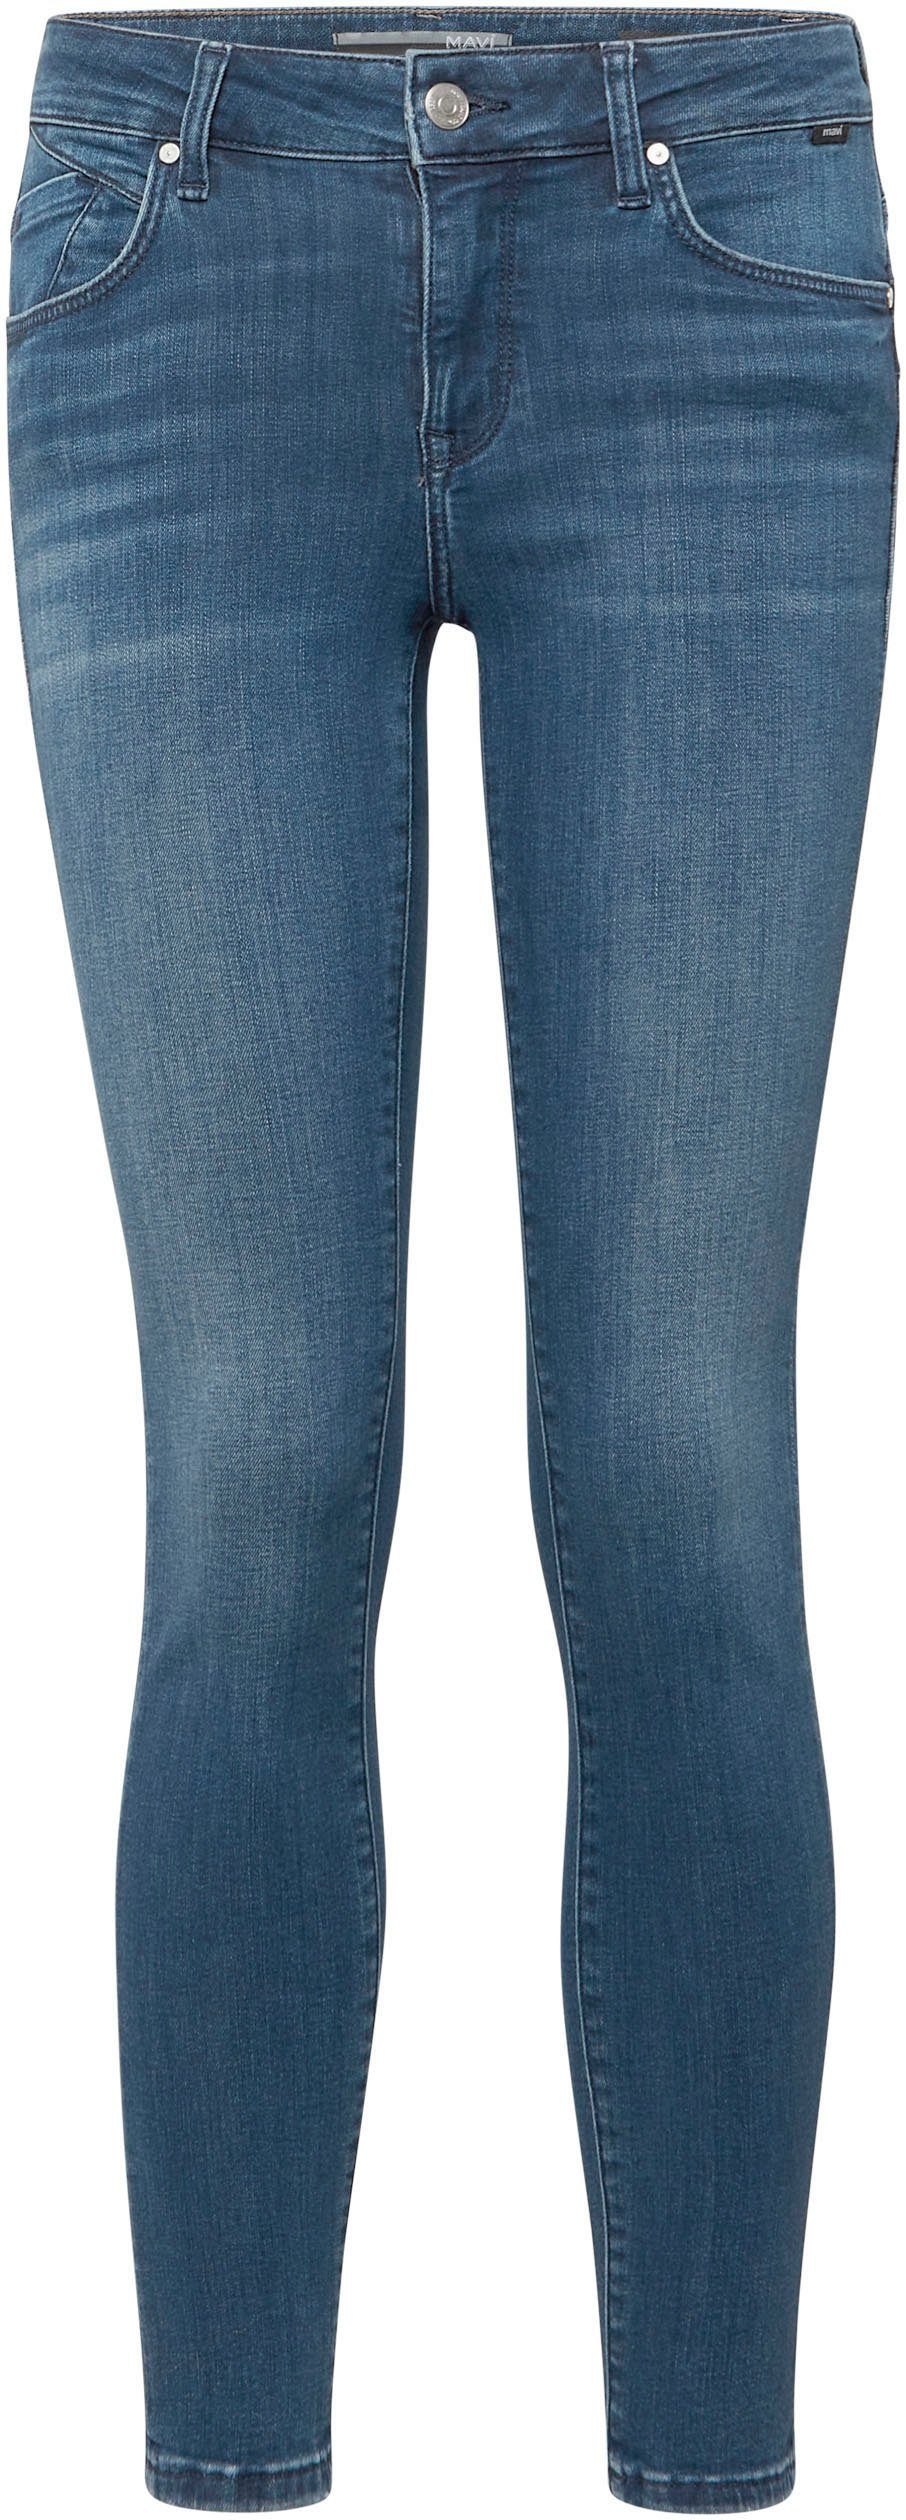 Sitz Skinny-fit-Jeans dark perfekten Mavi blue den Stretch mit für ADRIANA brushed